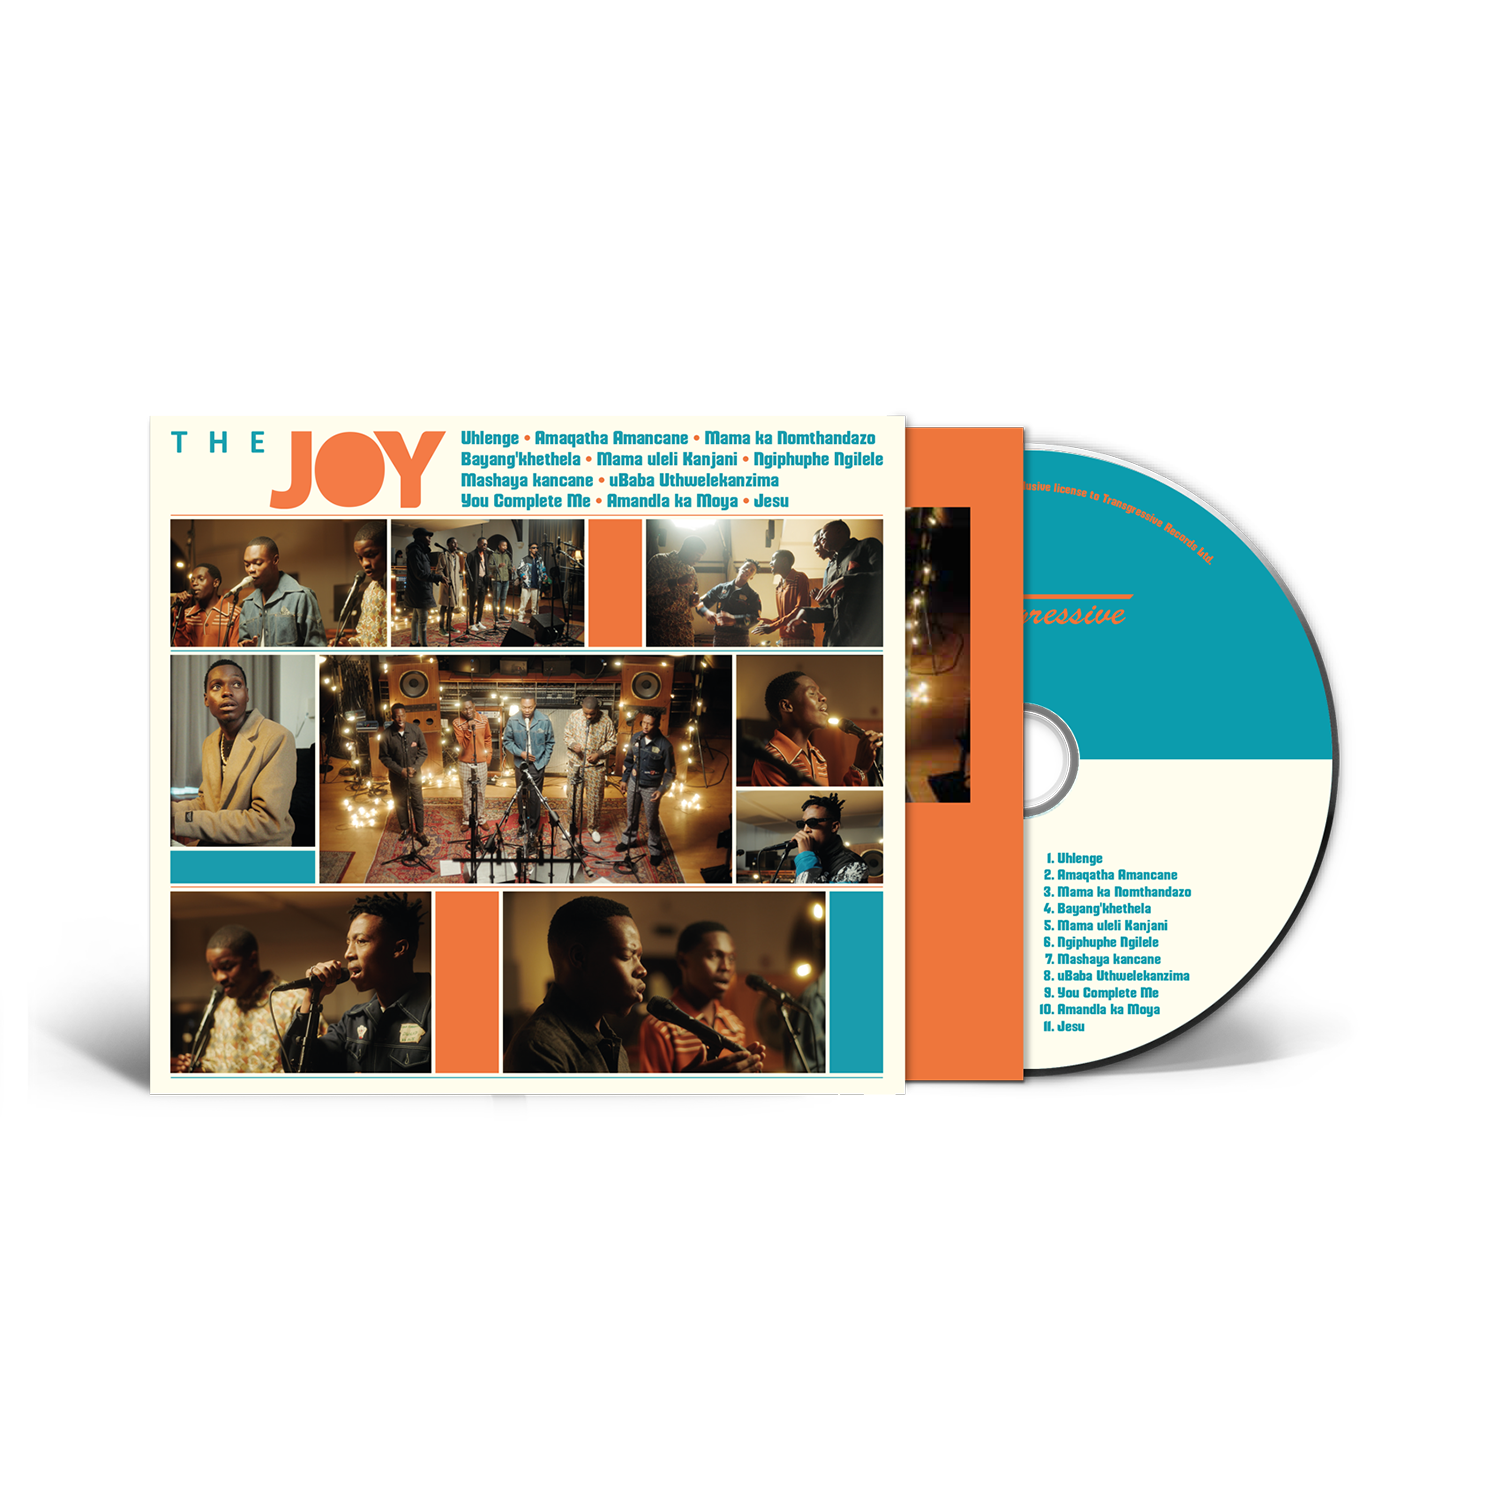 The Joy - The Joy: CD